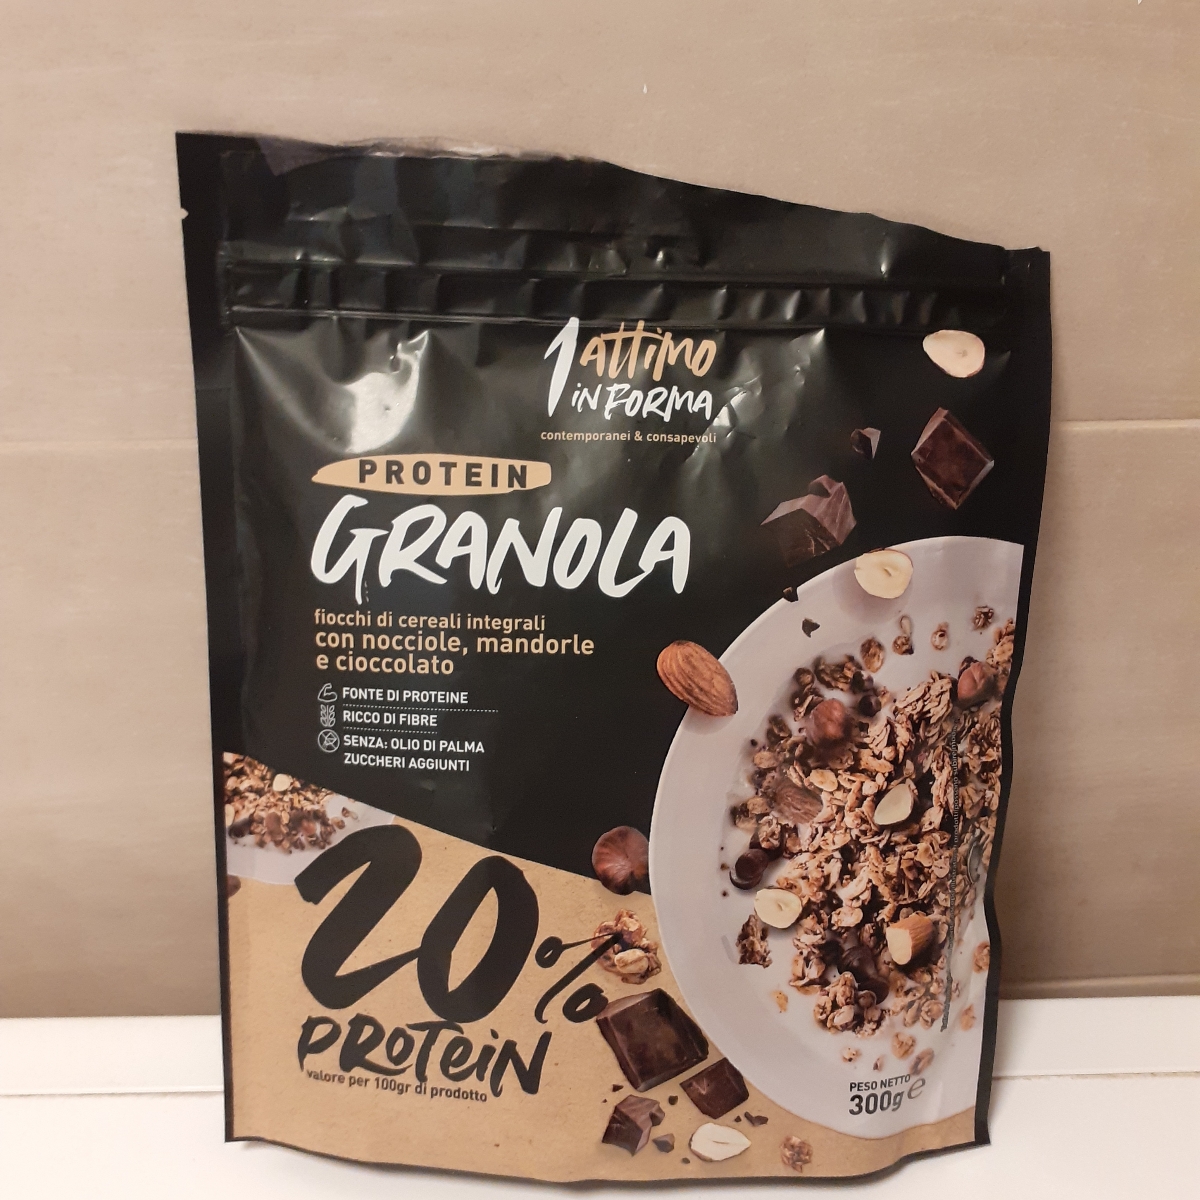 1 attimo in forma protein granola Review | abillion